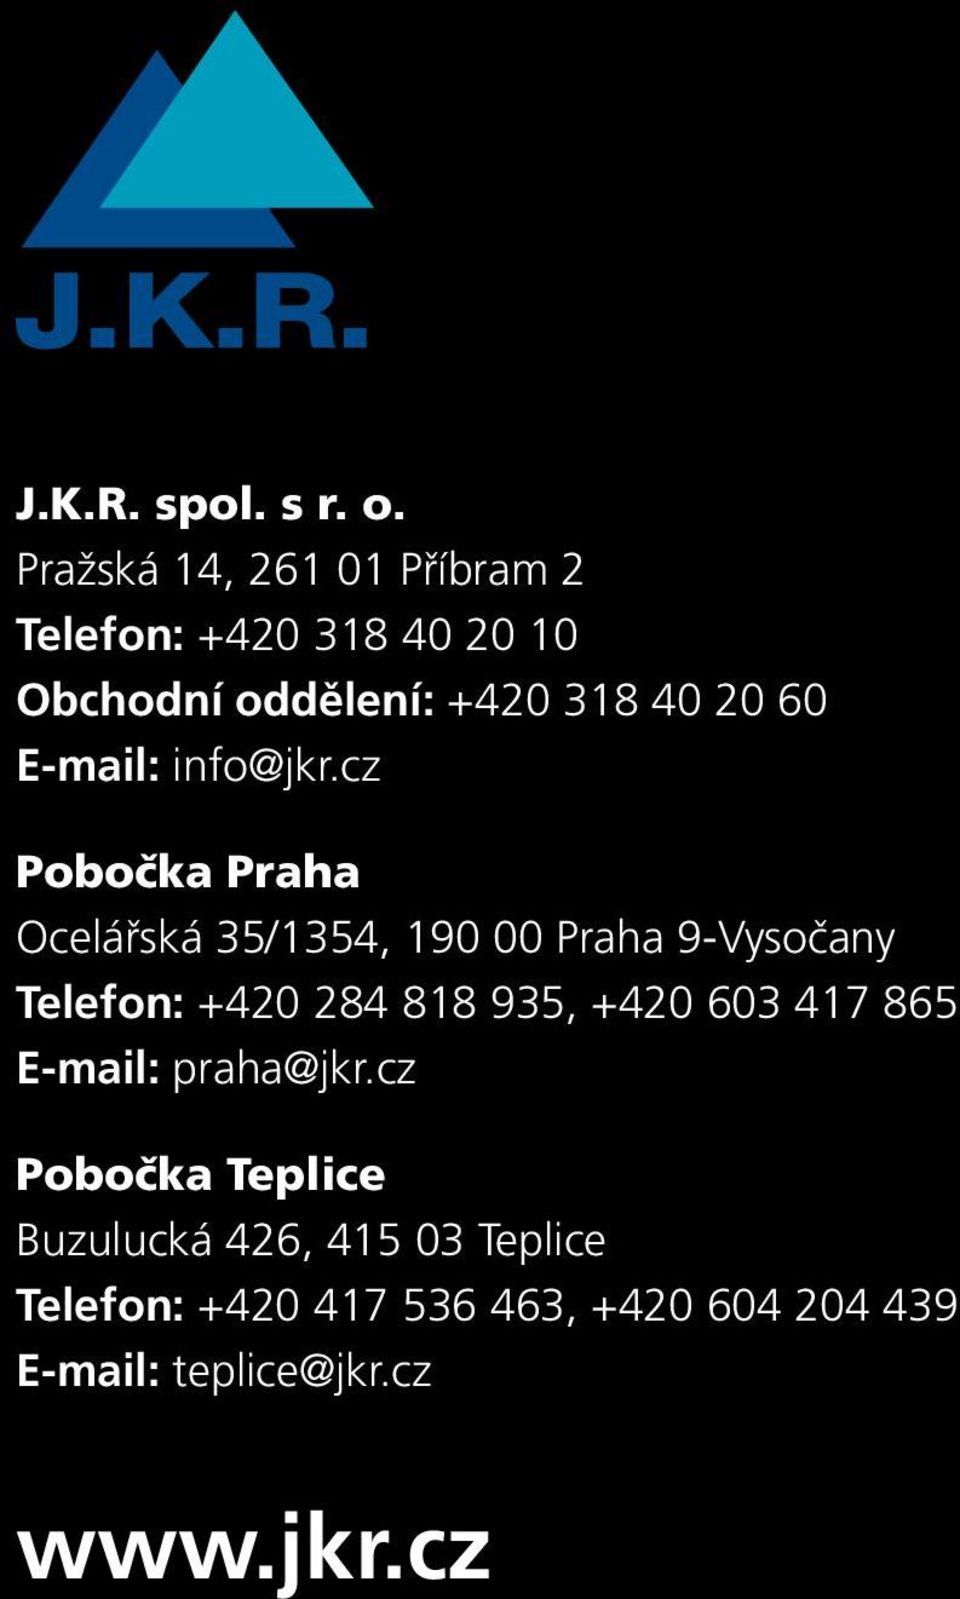 E-mail: info@jkr.